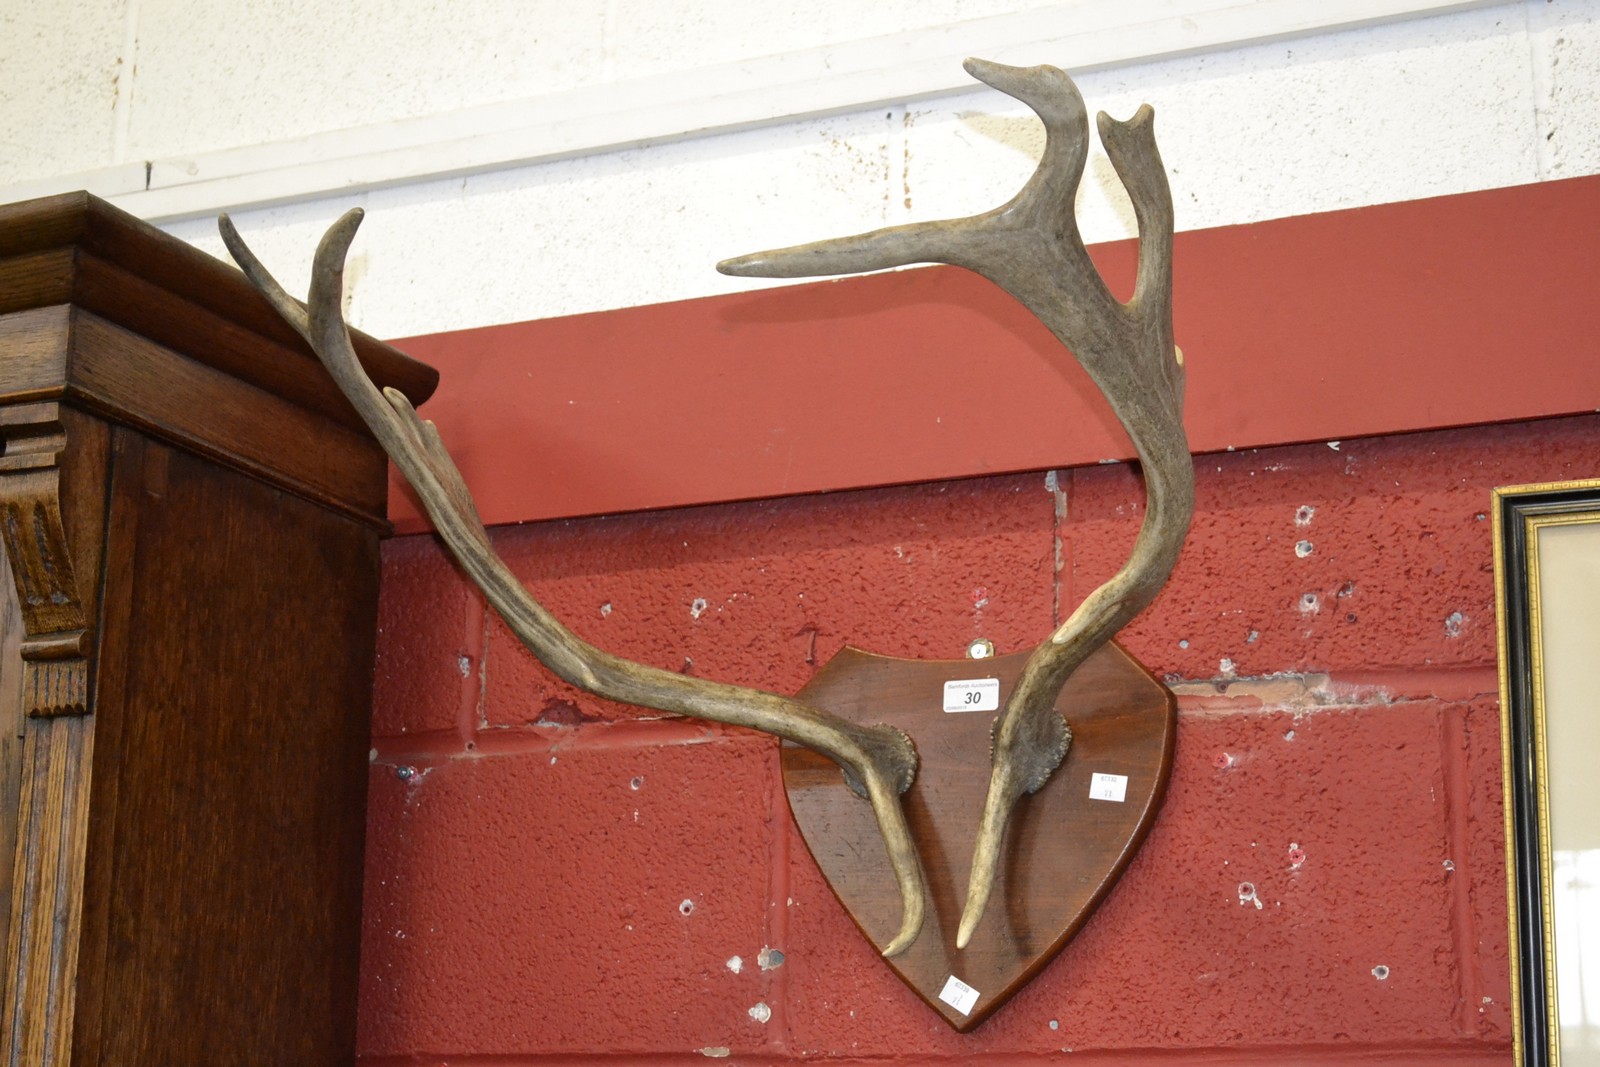 A pair of deer antlers,